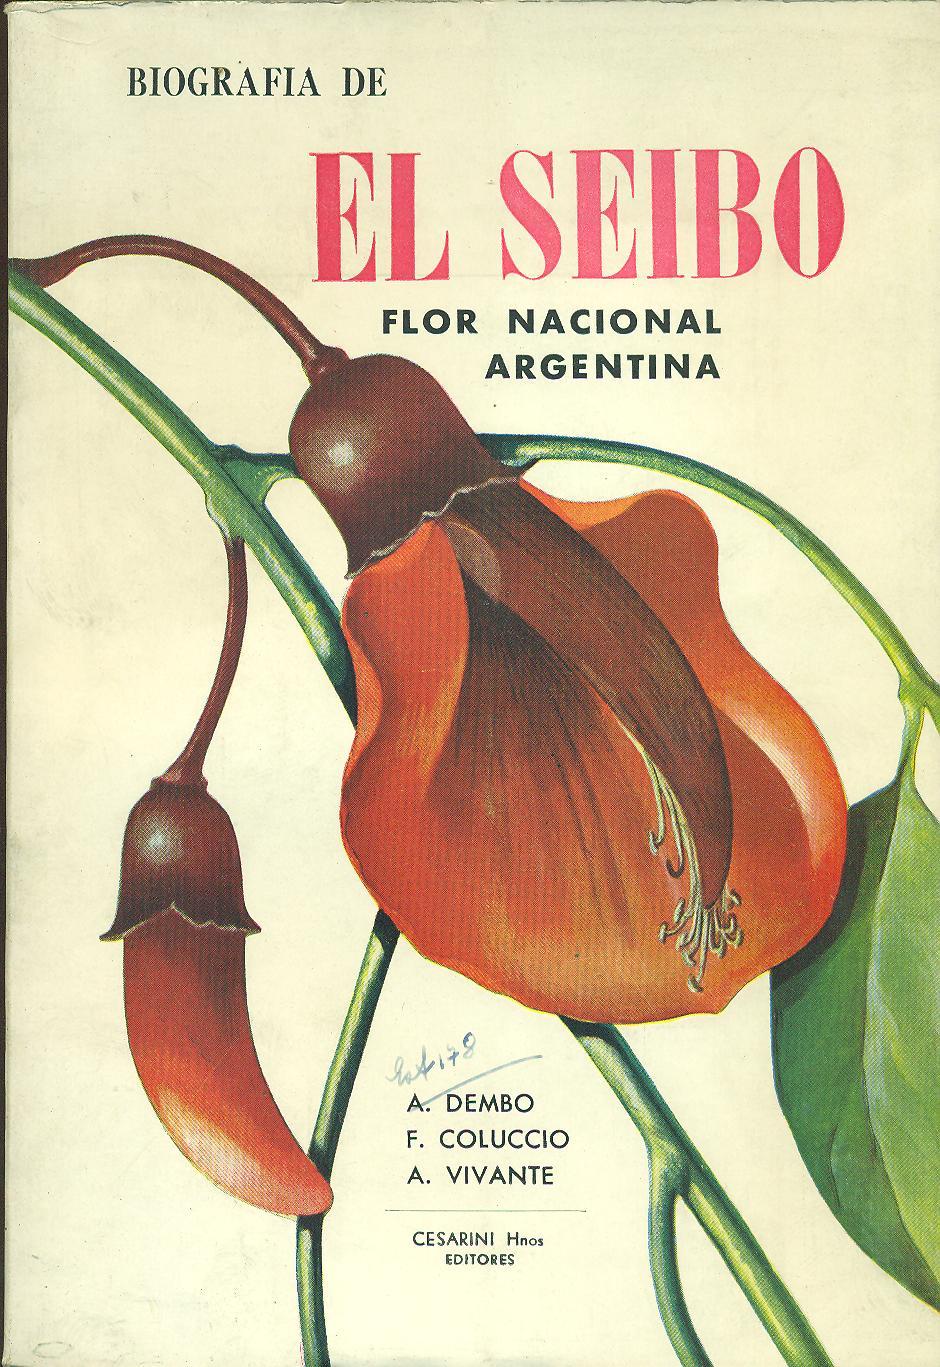 BIOGRAFÍA DE EL SEIBO FLOR NACIONAL ARGENTINA by DEMBO / COLUCCIO /  VIVANTE, A. / F. / A.: Muy buen estado (1960) | Valentin Peremiansky